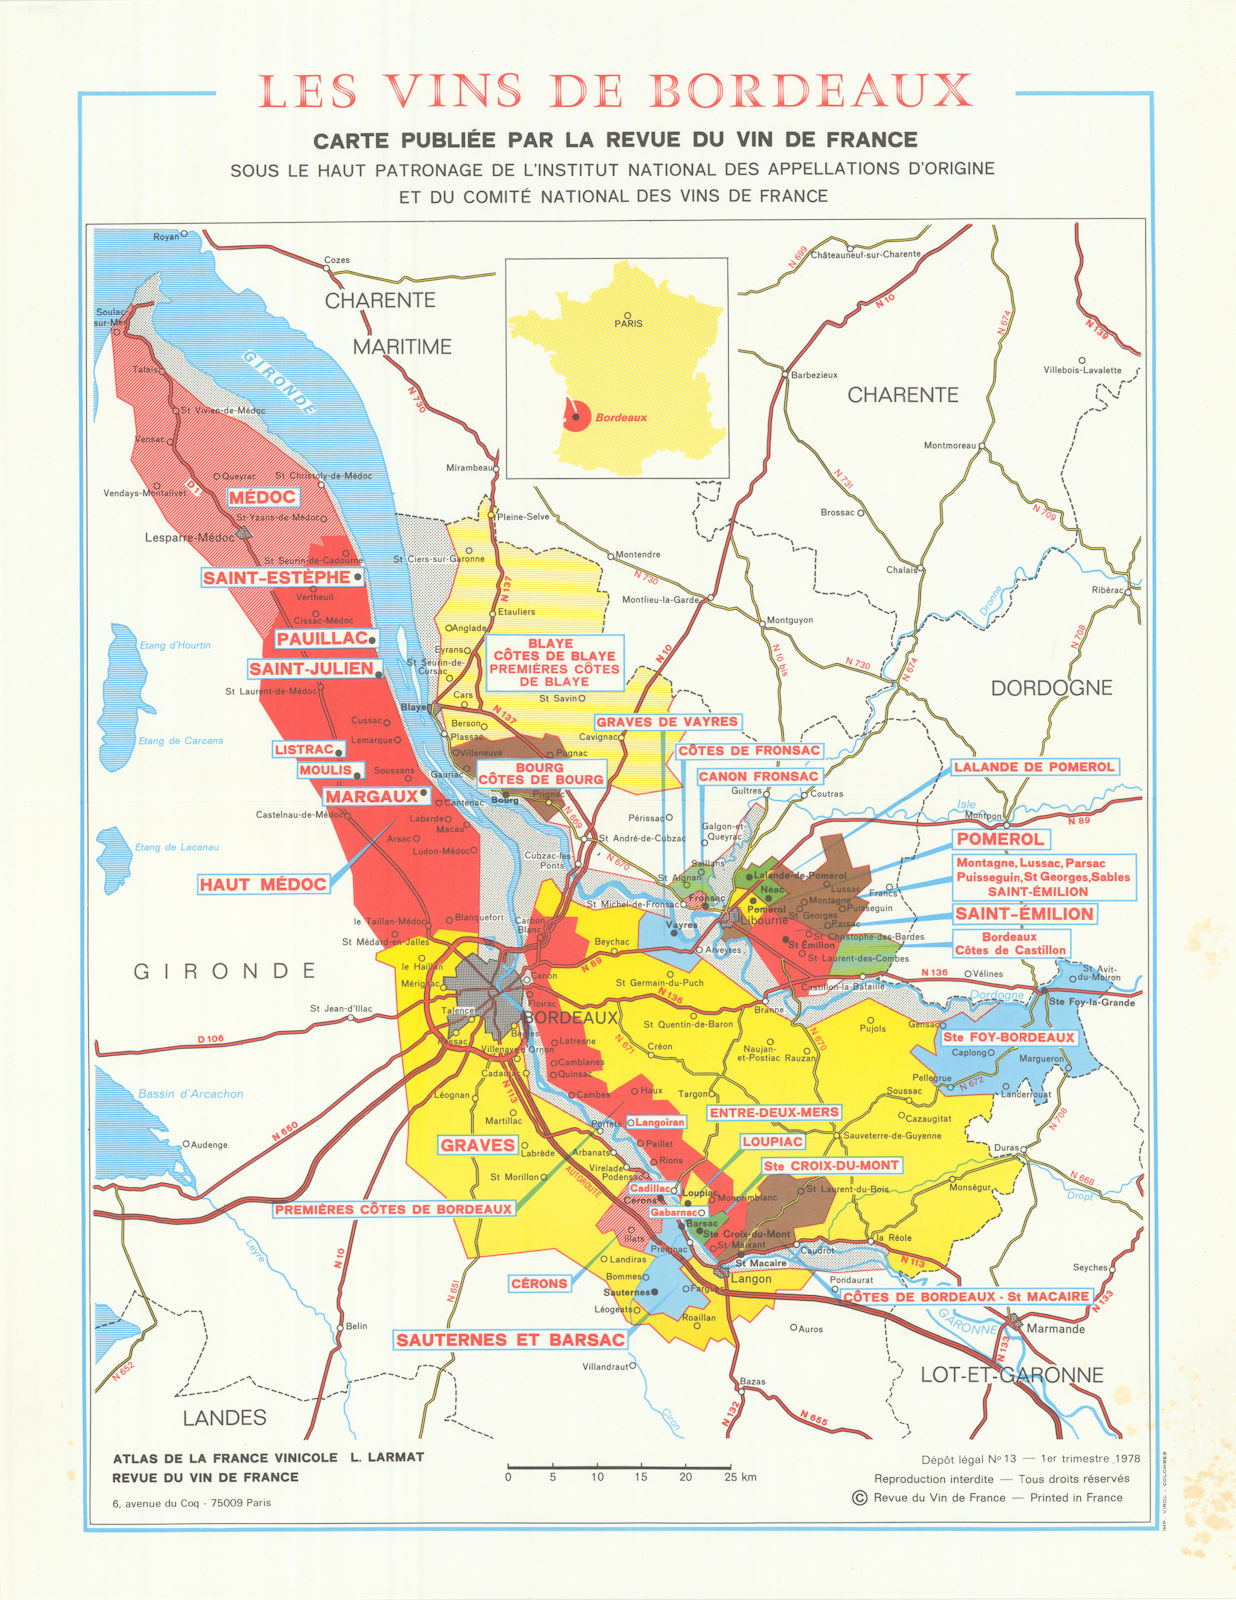 Les Vins de Bordeaux wine map. LARMAT / La Revue du Vin de France 1978 old